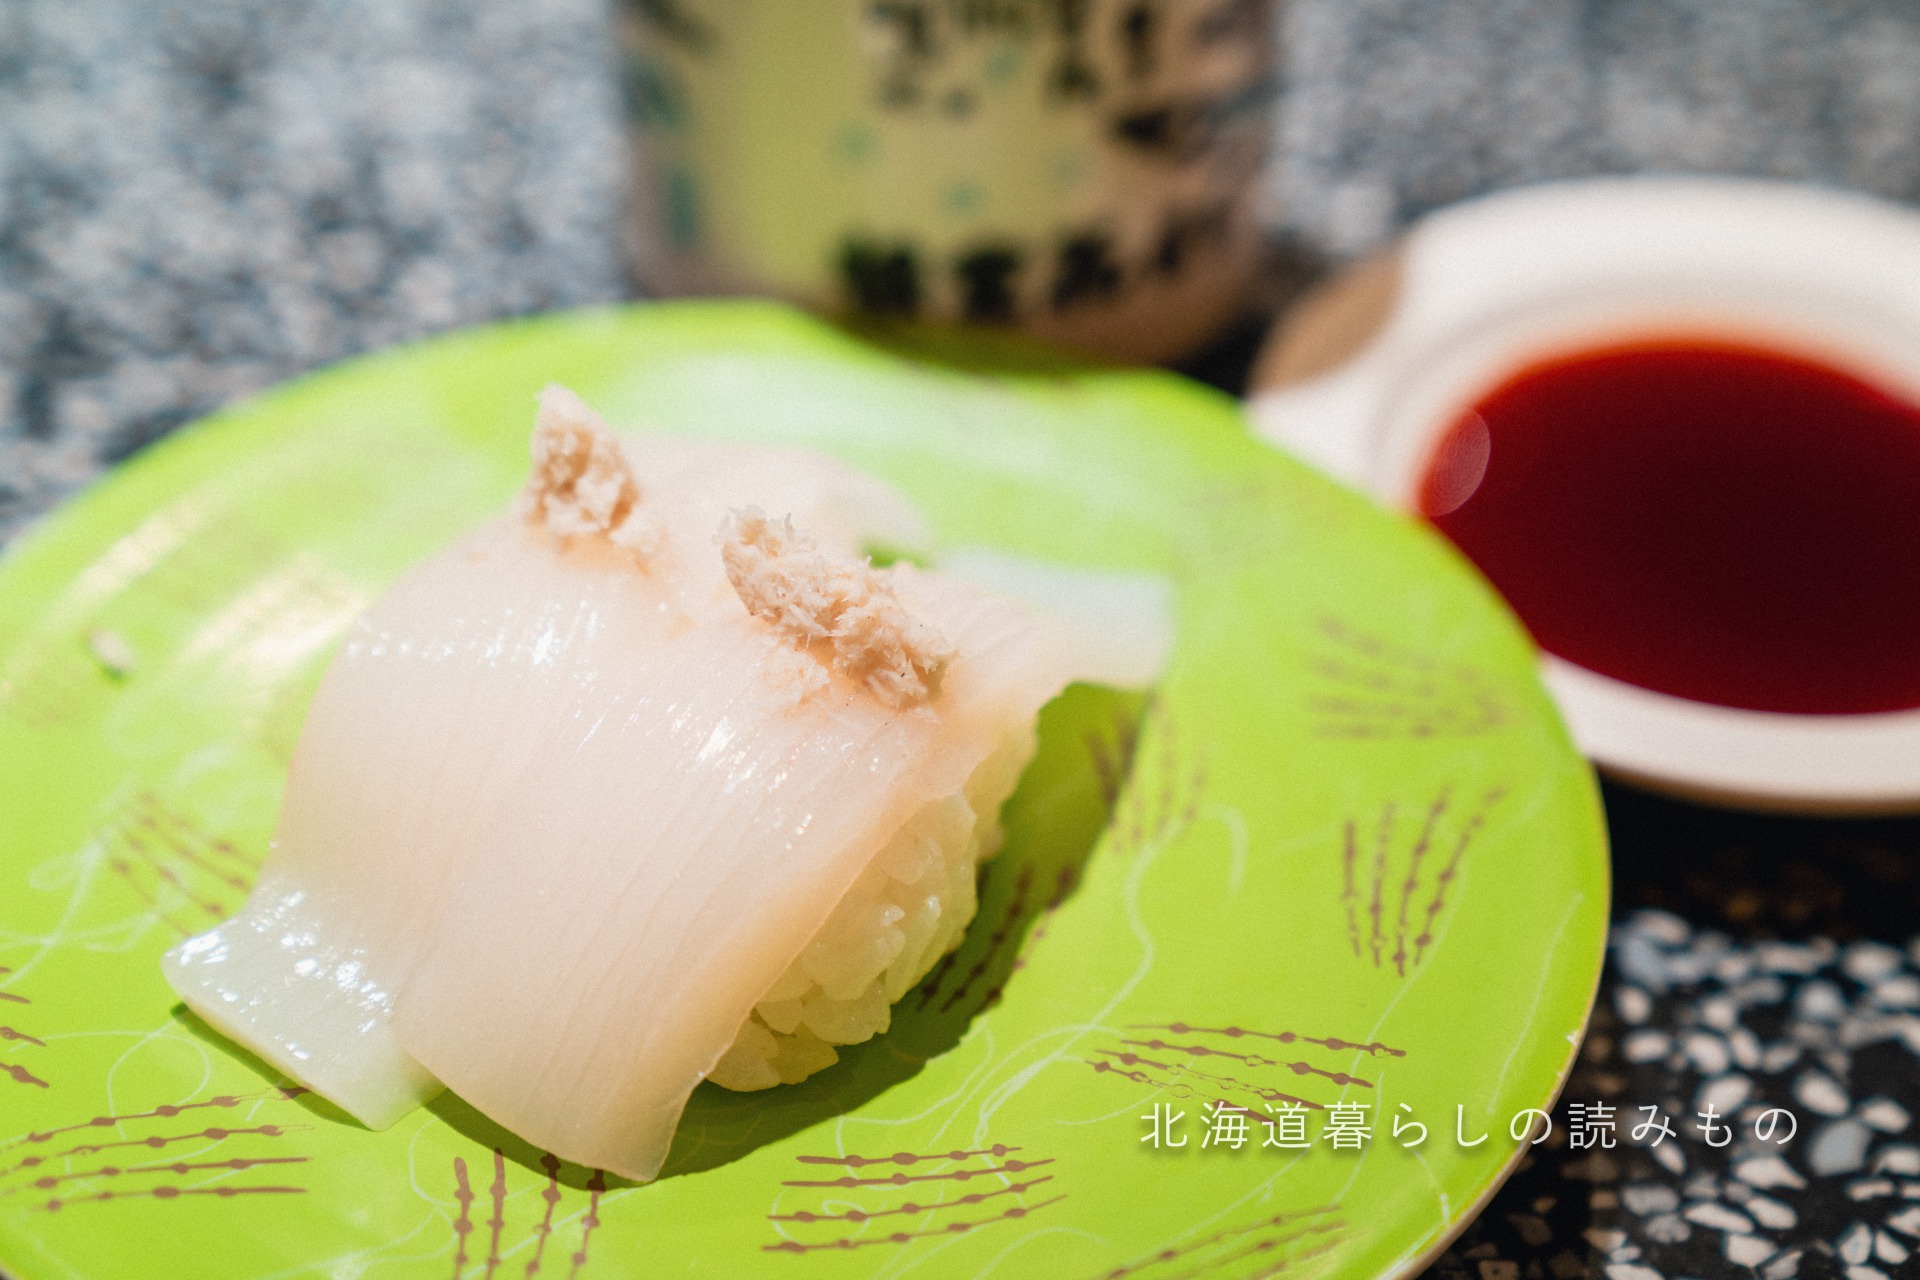 迴轉壽司根室花丸的菜單上的「墨魚野生綠芥末」